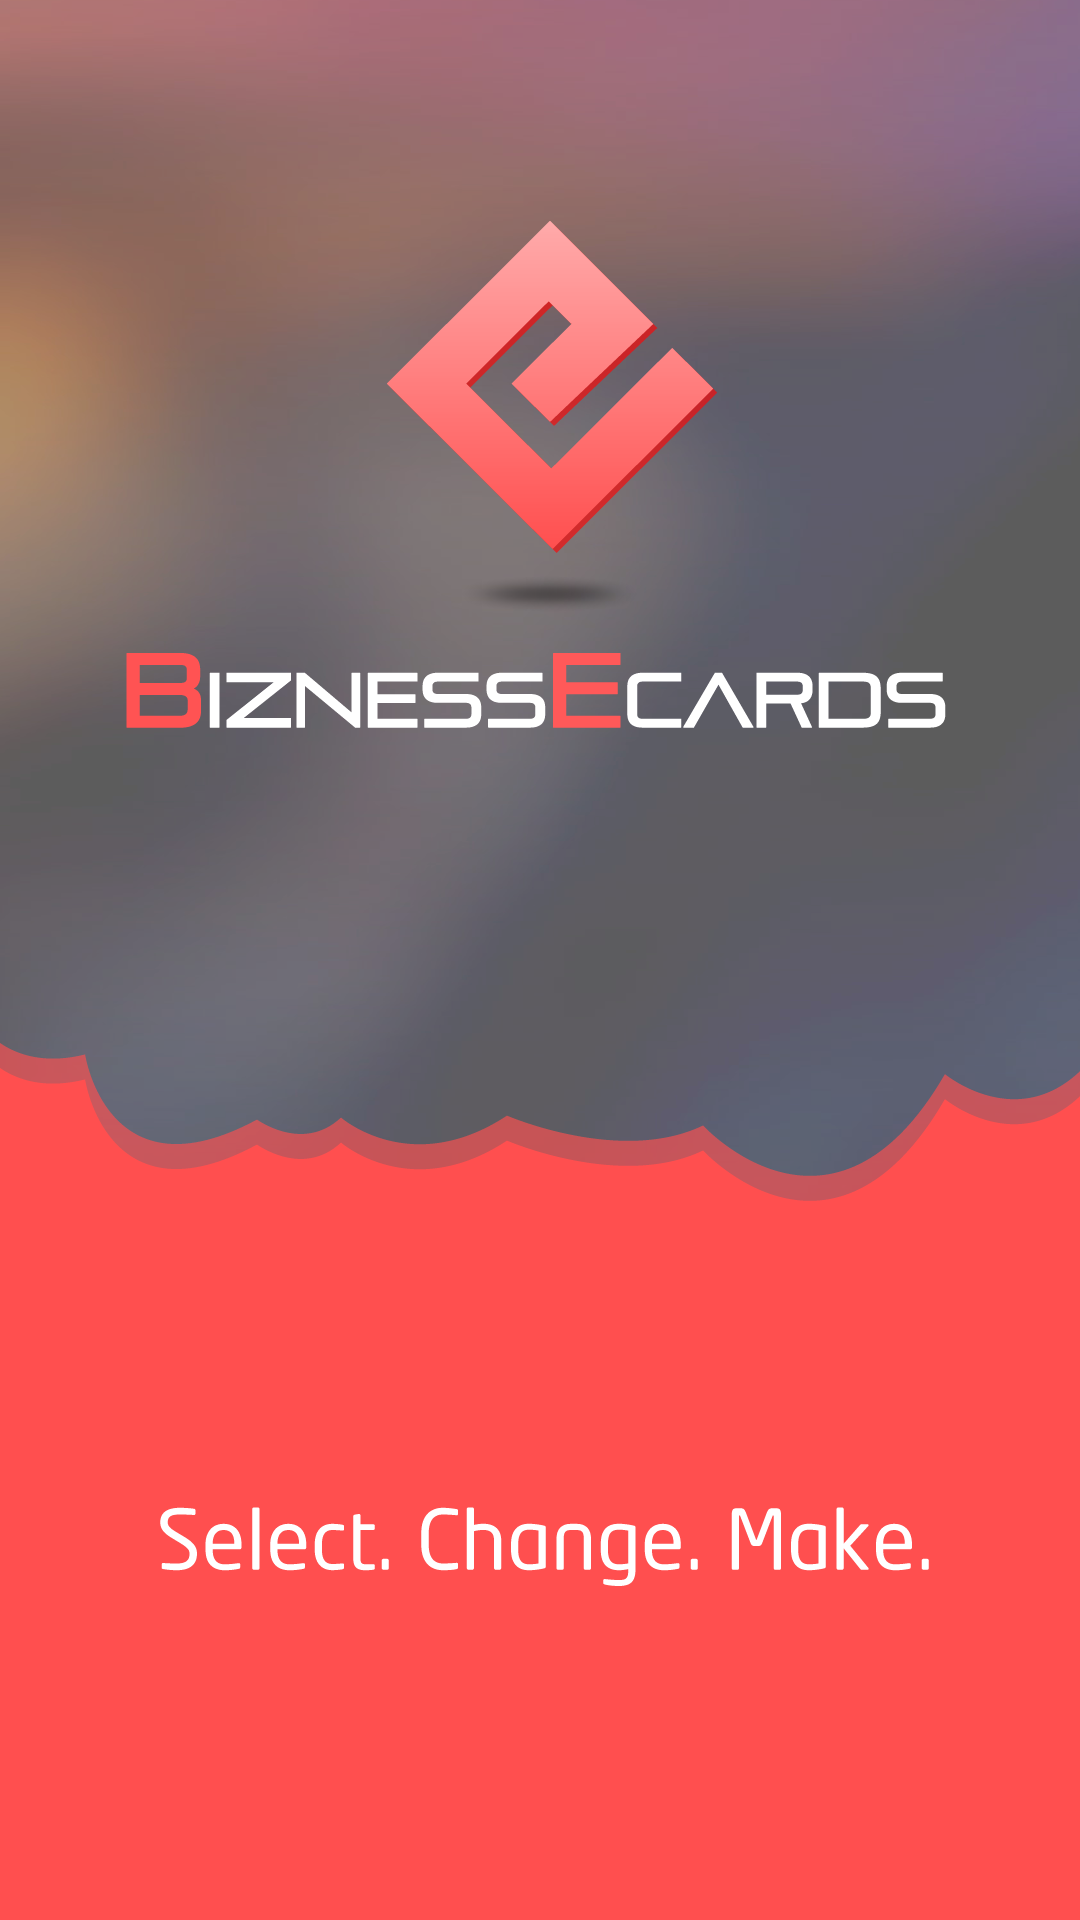 BiznessEcard